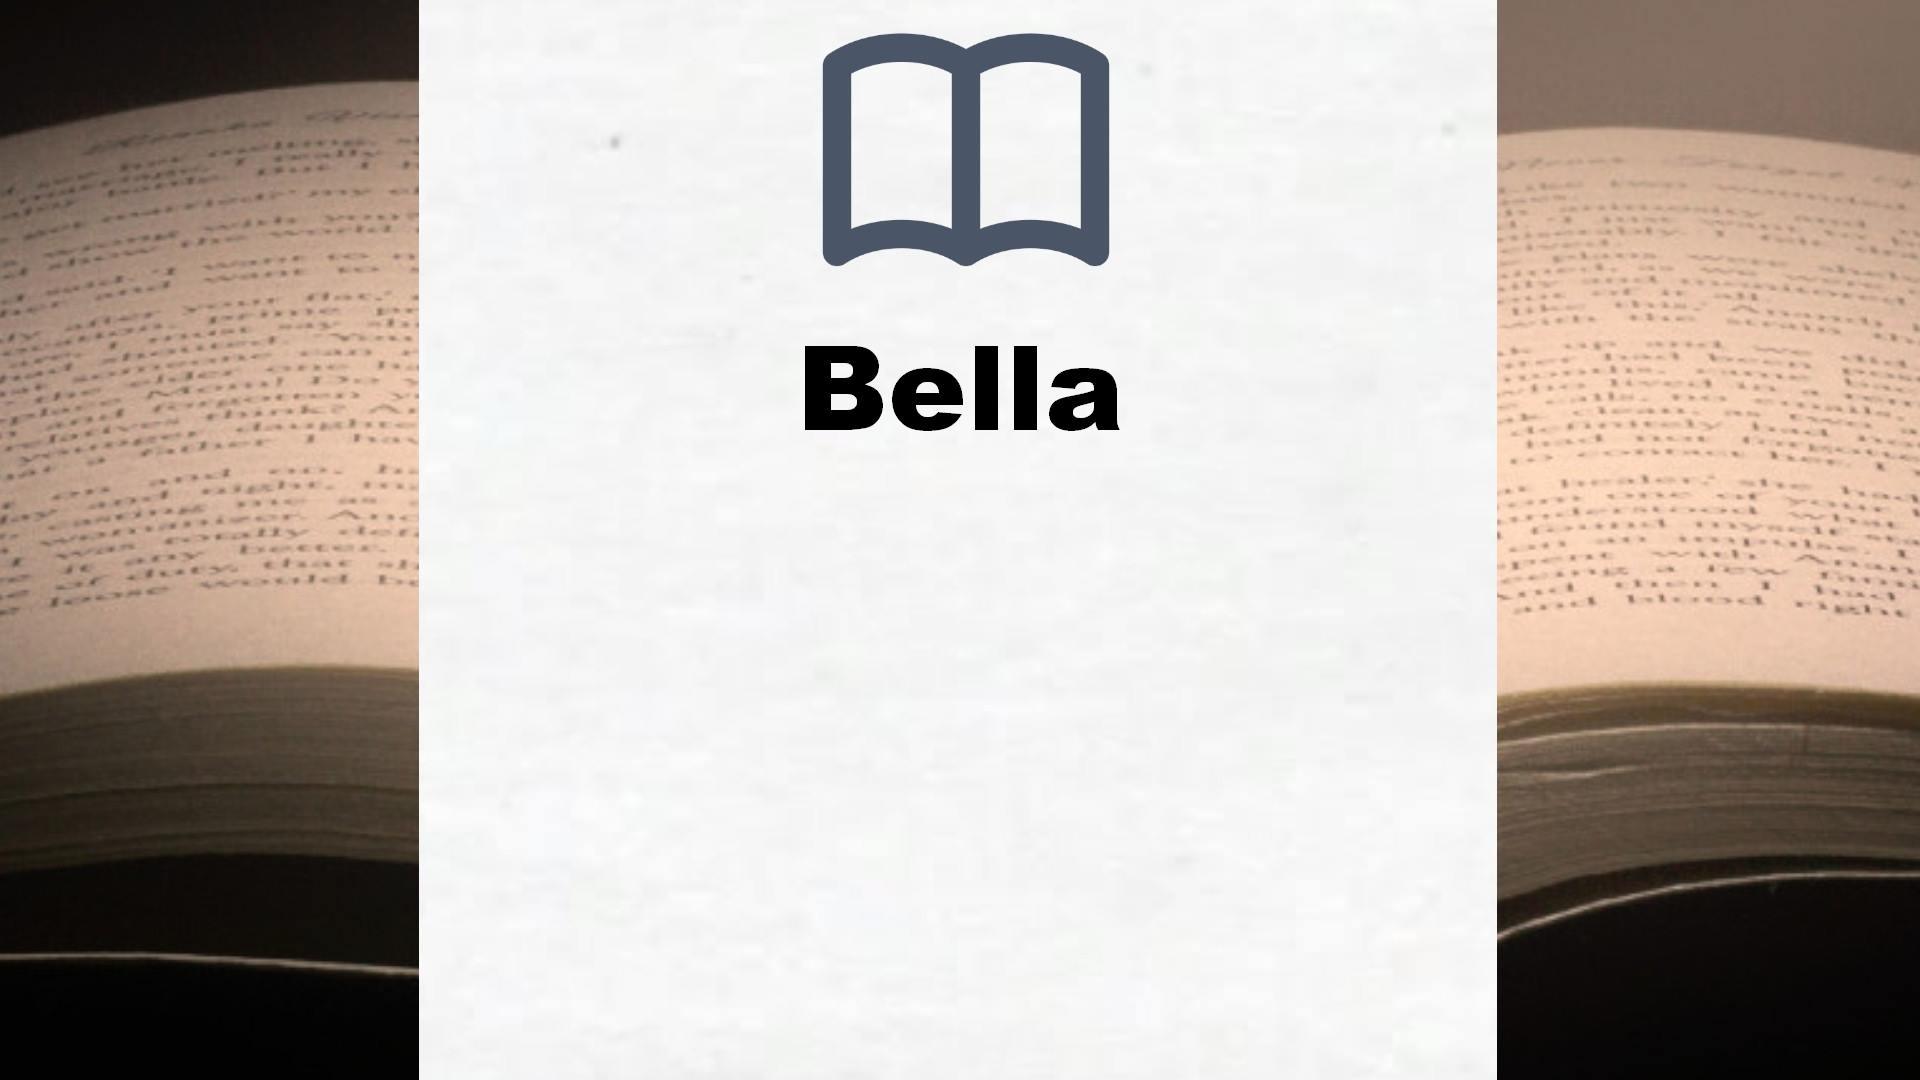 Bücher über Bella